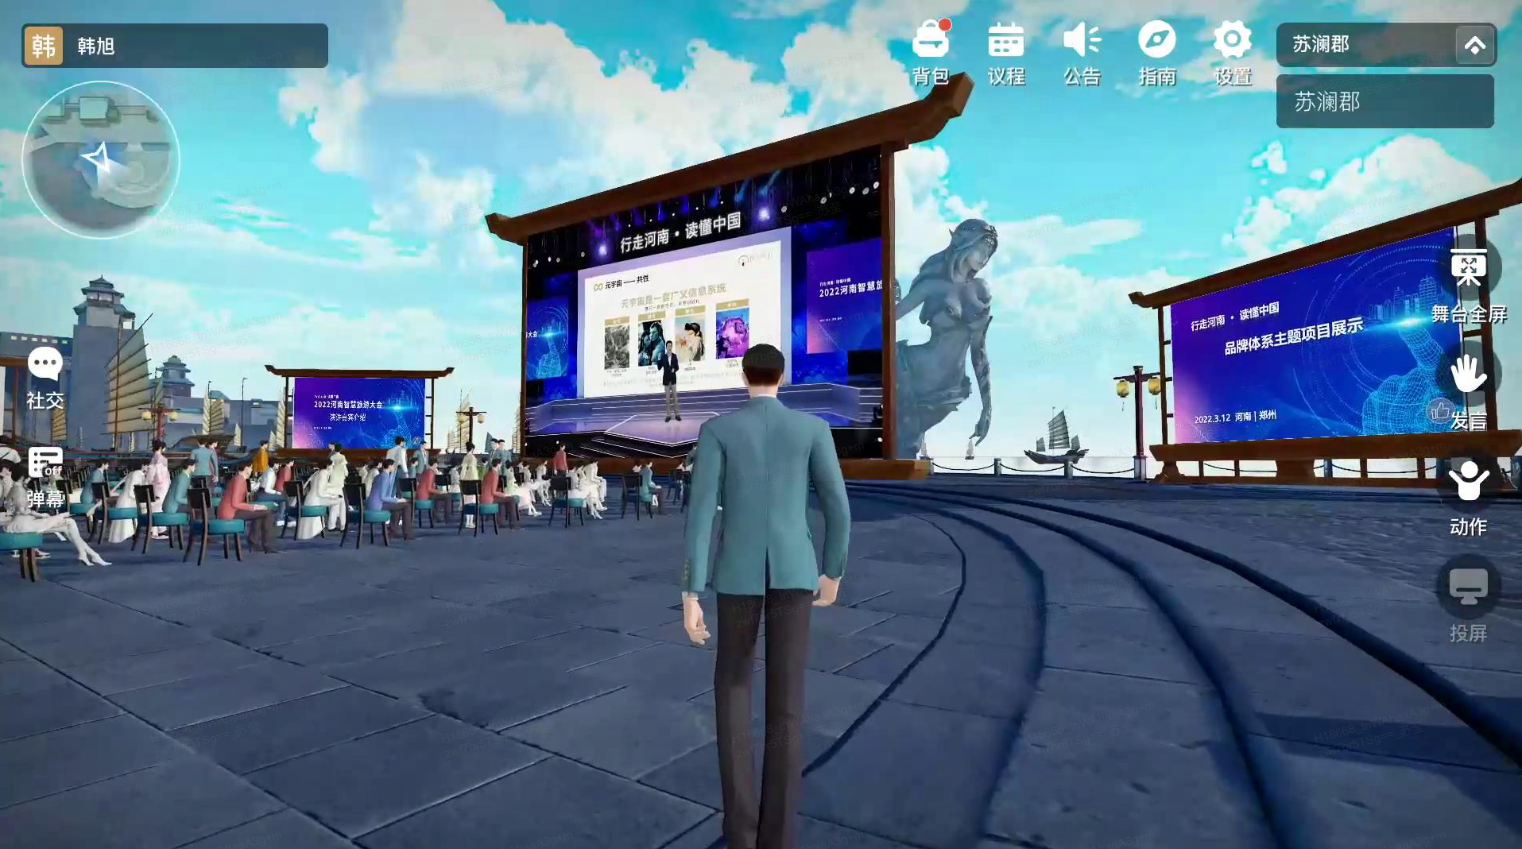 图片展示了一个三维虚拟现实场景，中间有虚拟角色，周围是观众、大屏幕及现代与传统建筑元素混合的环境。